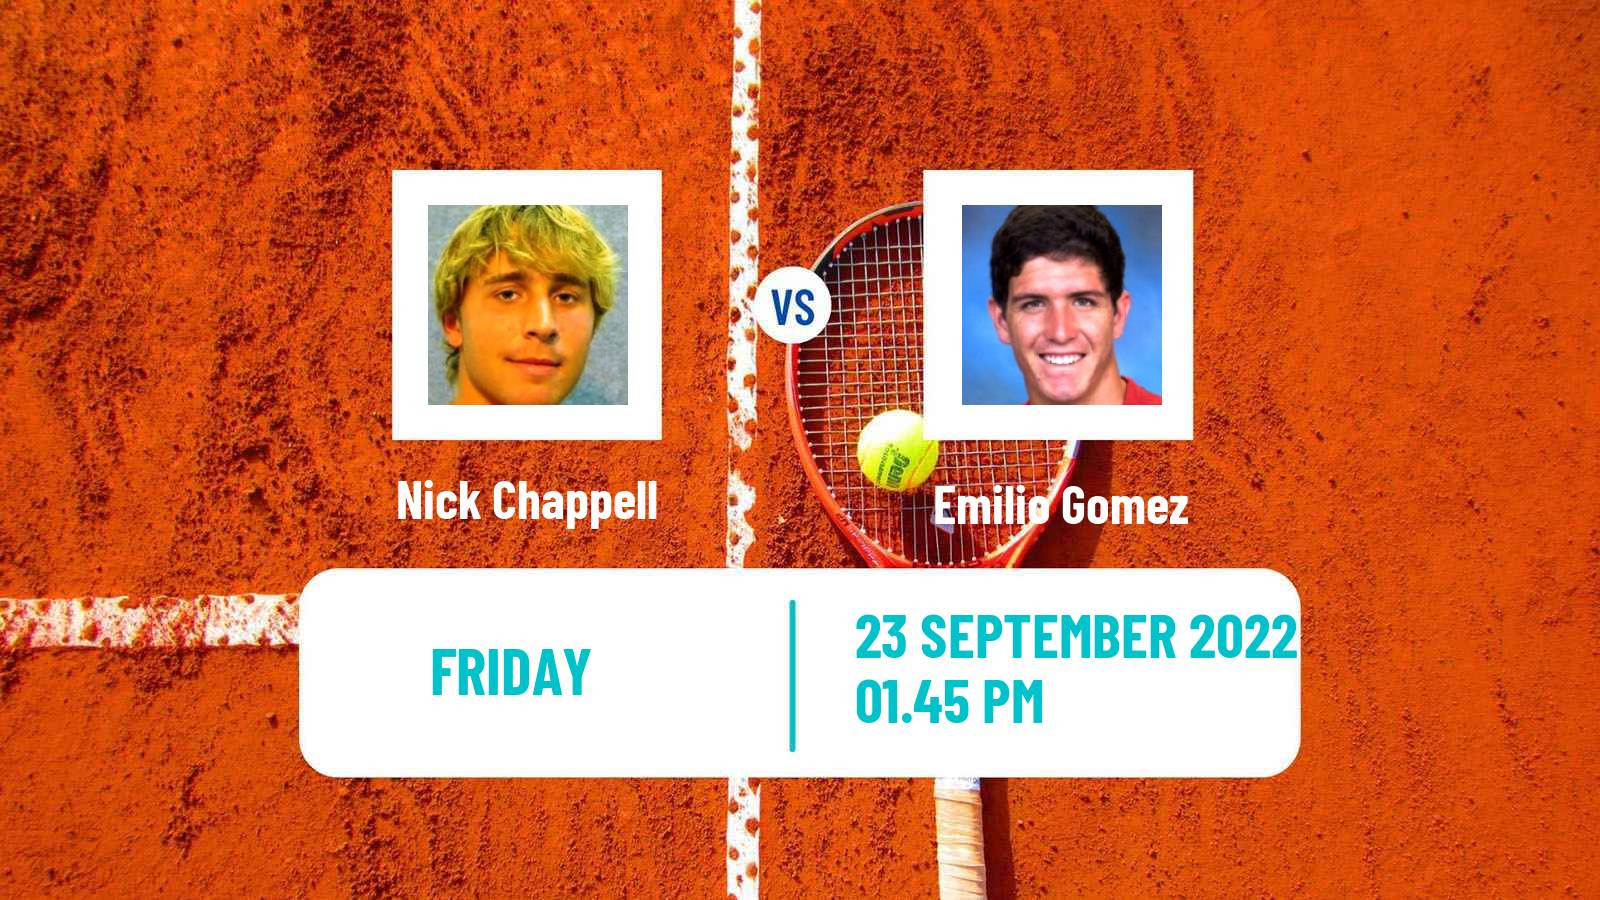 Tennis ATP Challenger Nick Chappell - Emilio Gomez